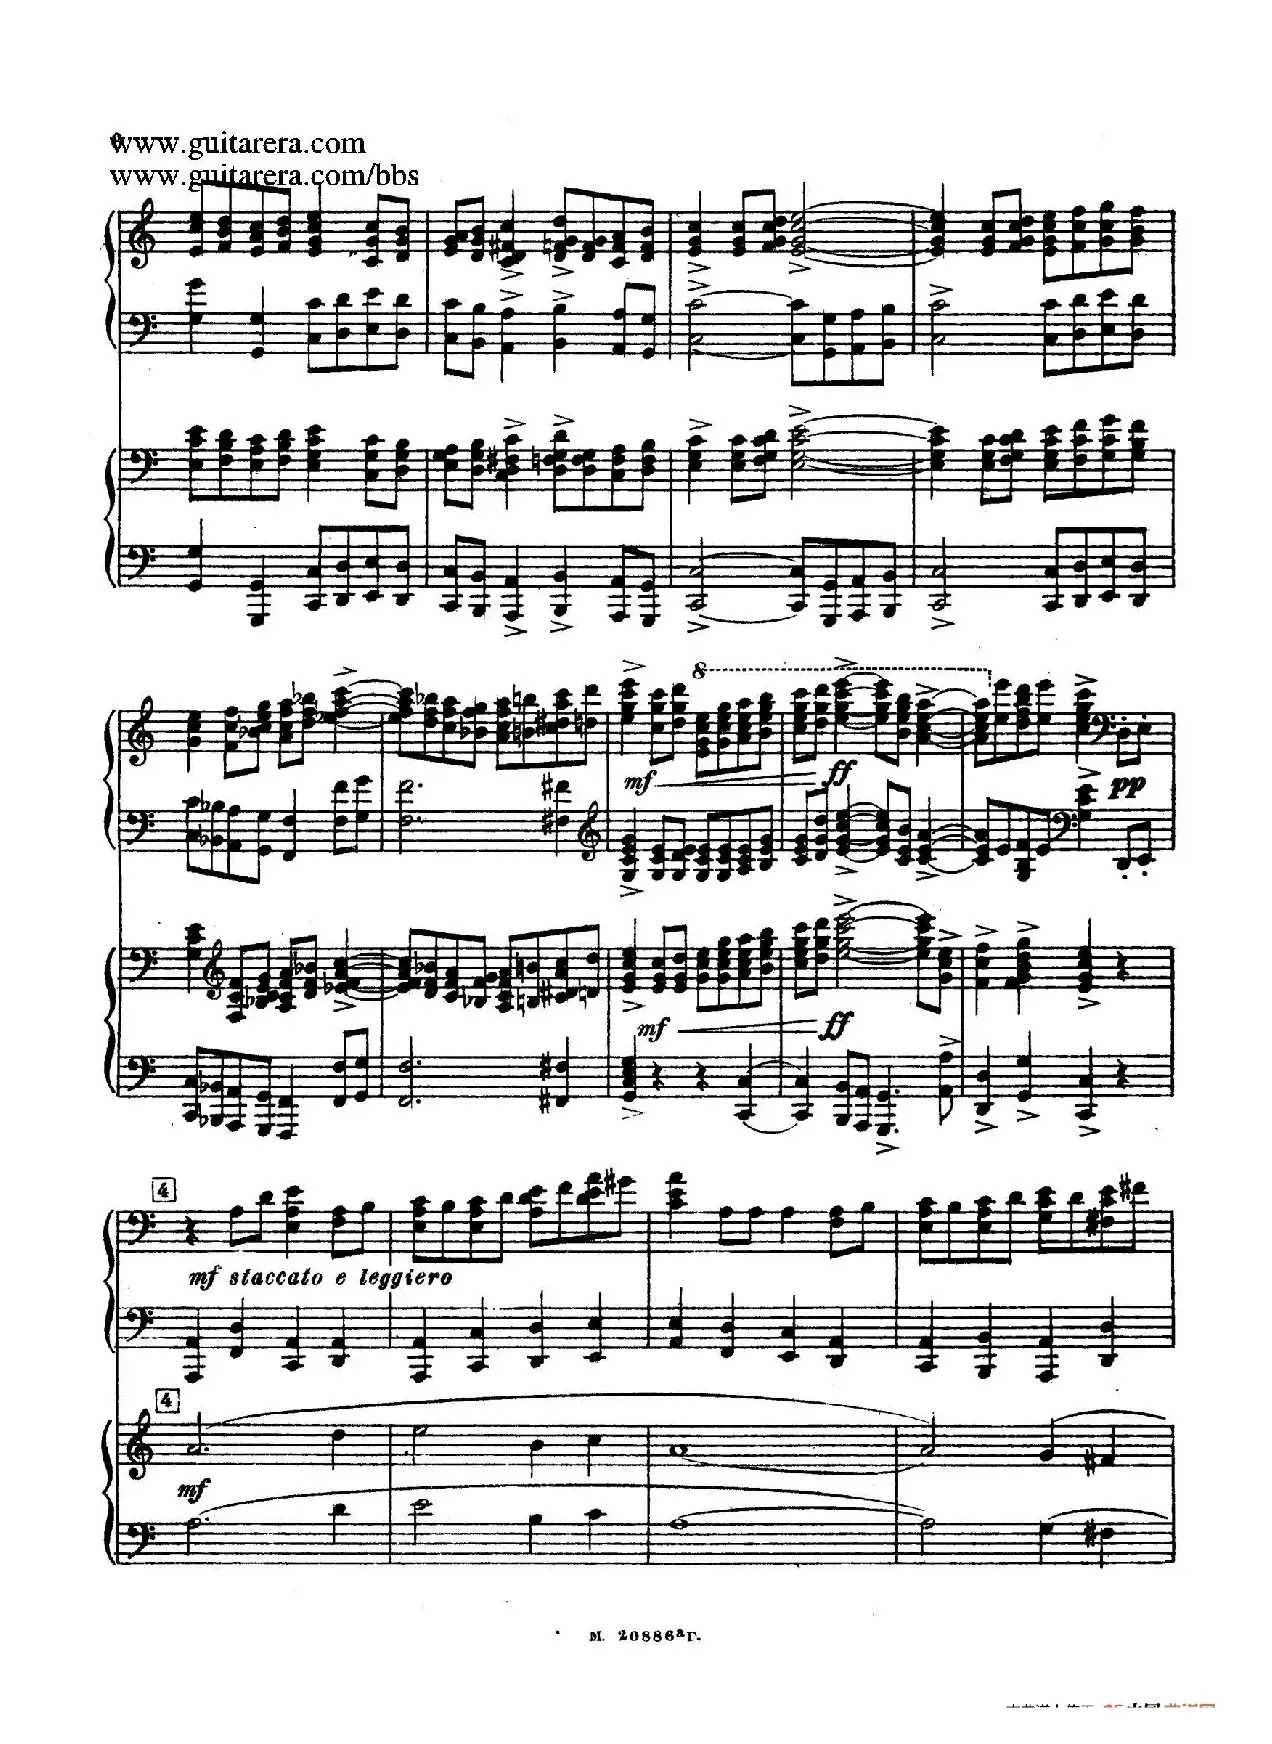 第二双钢琴组曲 Suite for Two Pianos No.2 Op.17（1. 引子 Introduction）